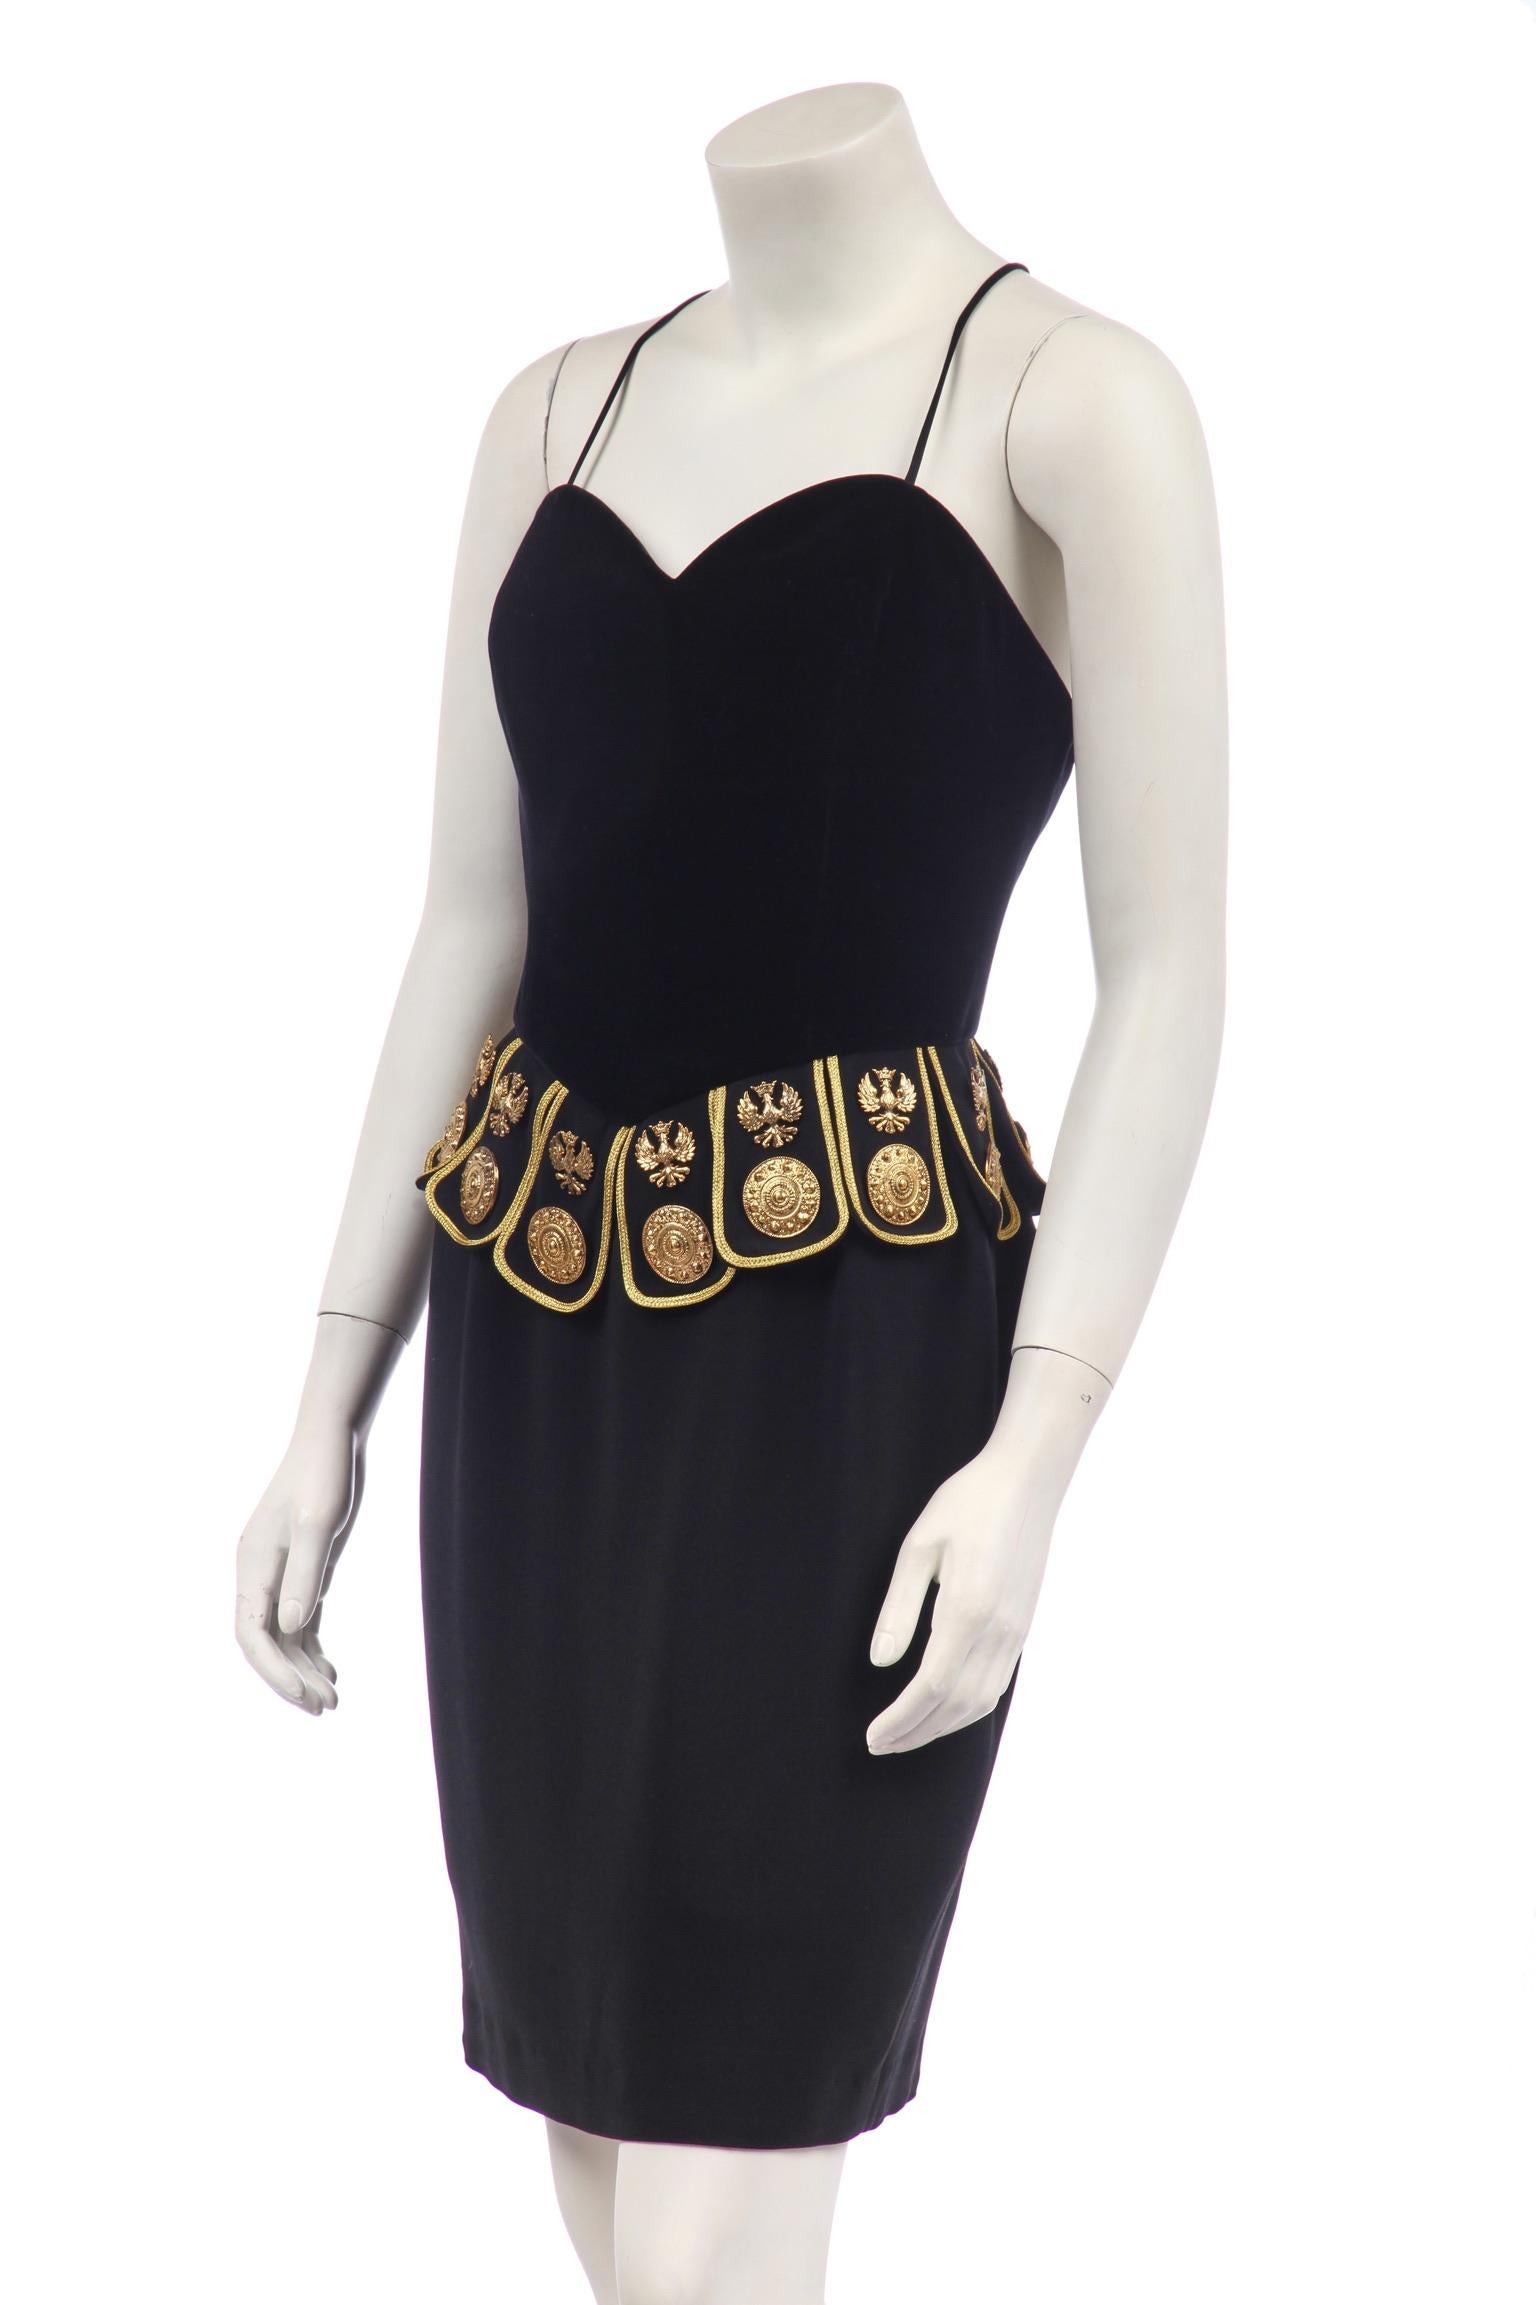 - Moschino Couture
- Robe gladiateur
- De la collection S de 1989
- Corsage ajusté en velours noir sur jupe en crêpe noir
- Pattes de serrage à la taille, bordées d'or et de métal complexe. 
  médaillons et embellissements en forme d'aigle
- Mini